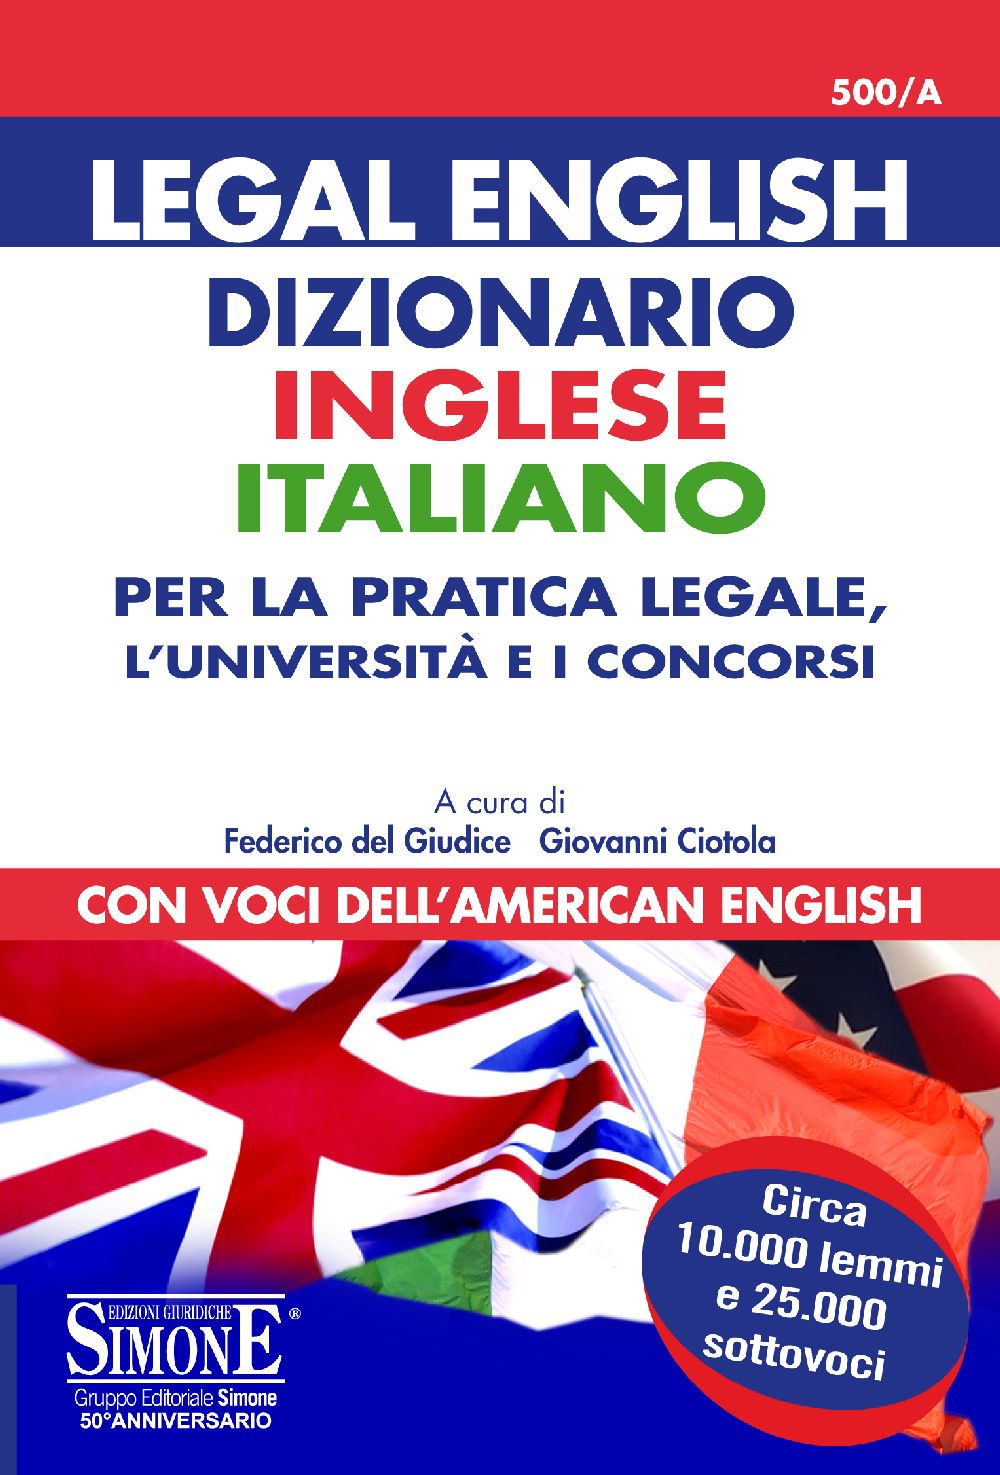 Legal English - Dizionario Inglese Italiano - Per la pratica legale, l'università  e i concorsi - 500/A